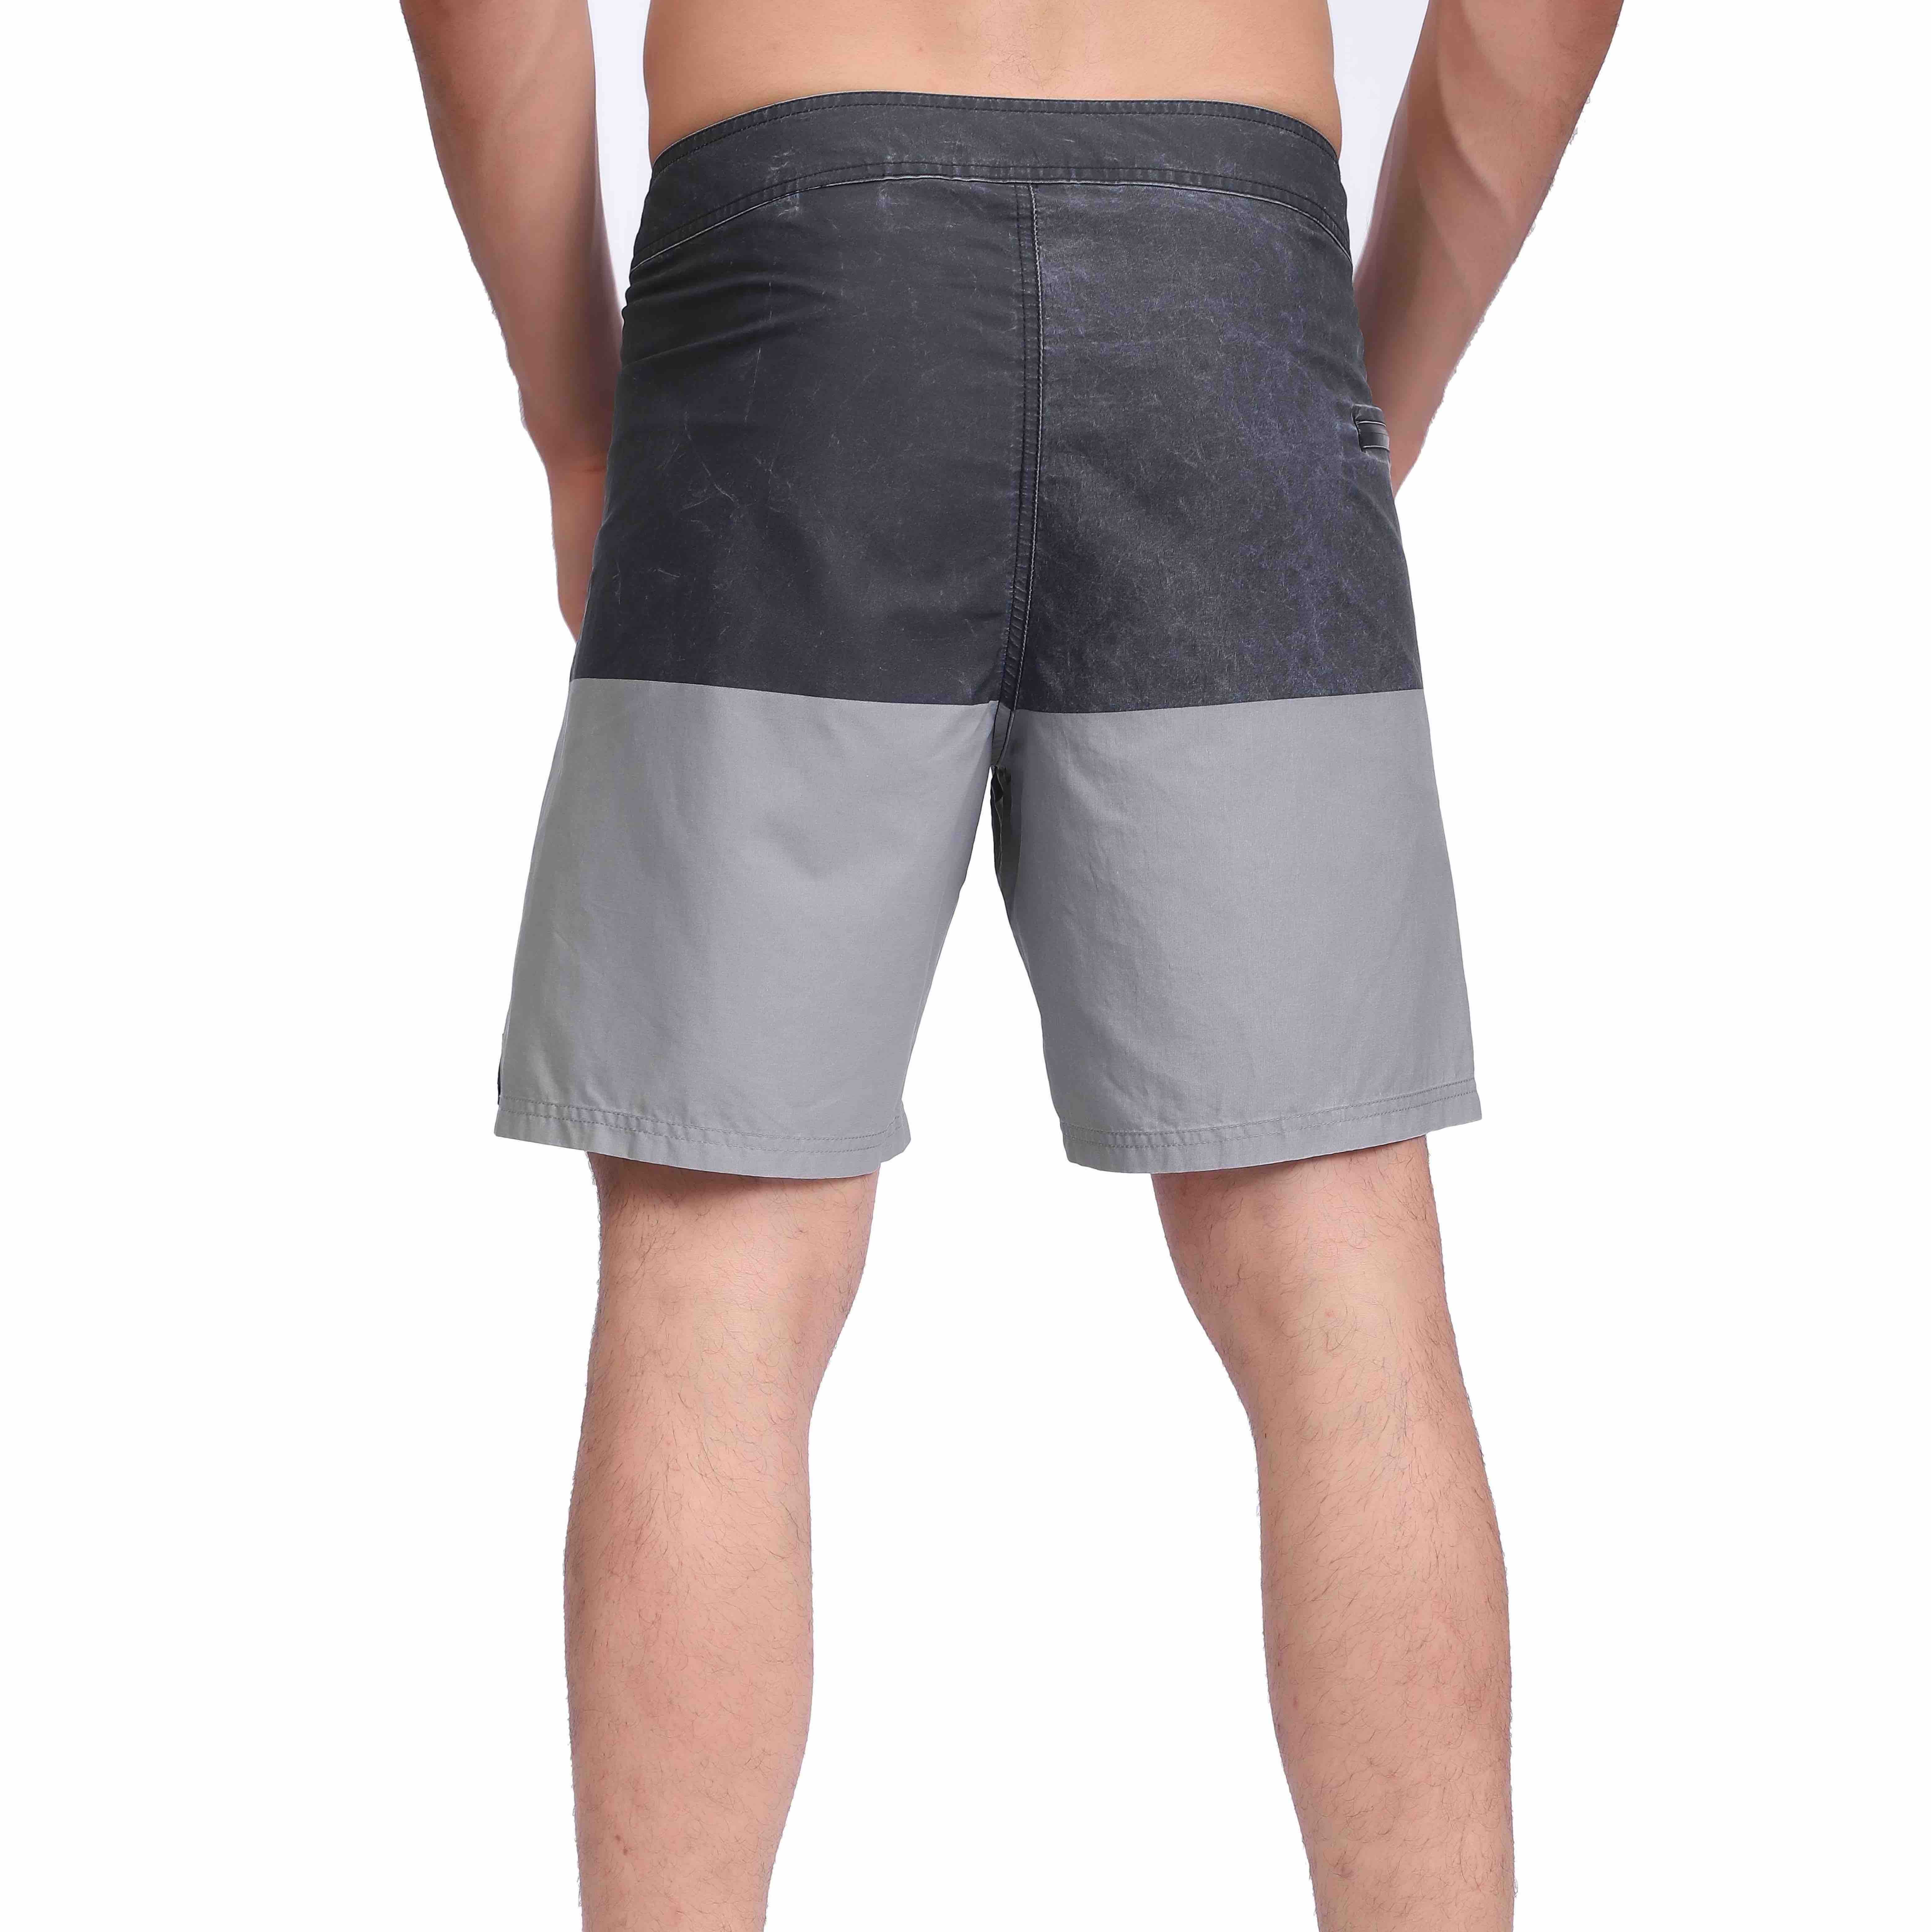 Мужские водостойкие плавательные шорты с пигментным принтом, внешний шов 19 дюймов